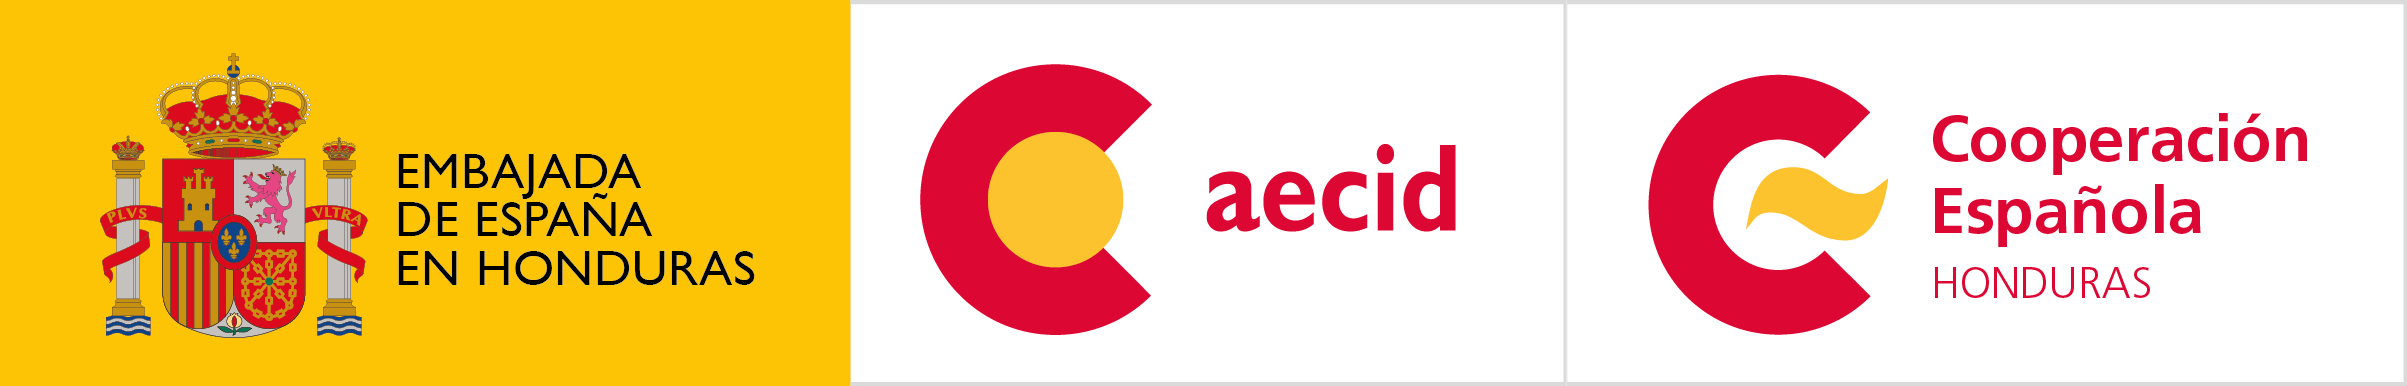 Logo Cooperación Española